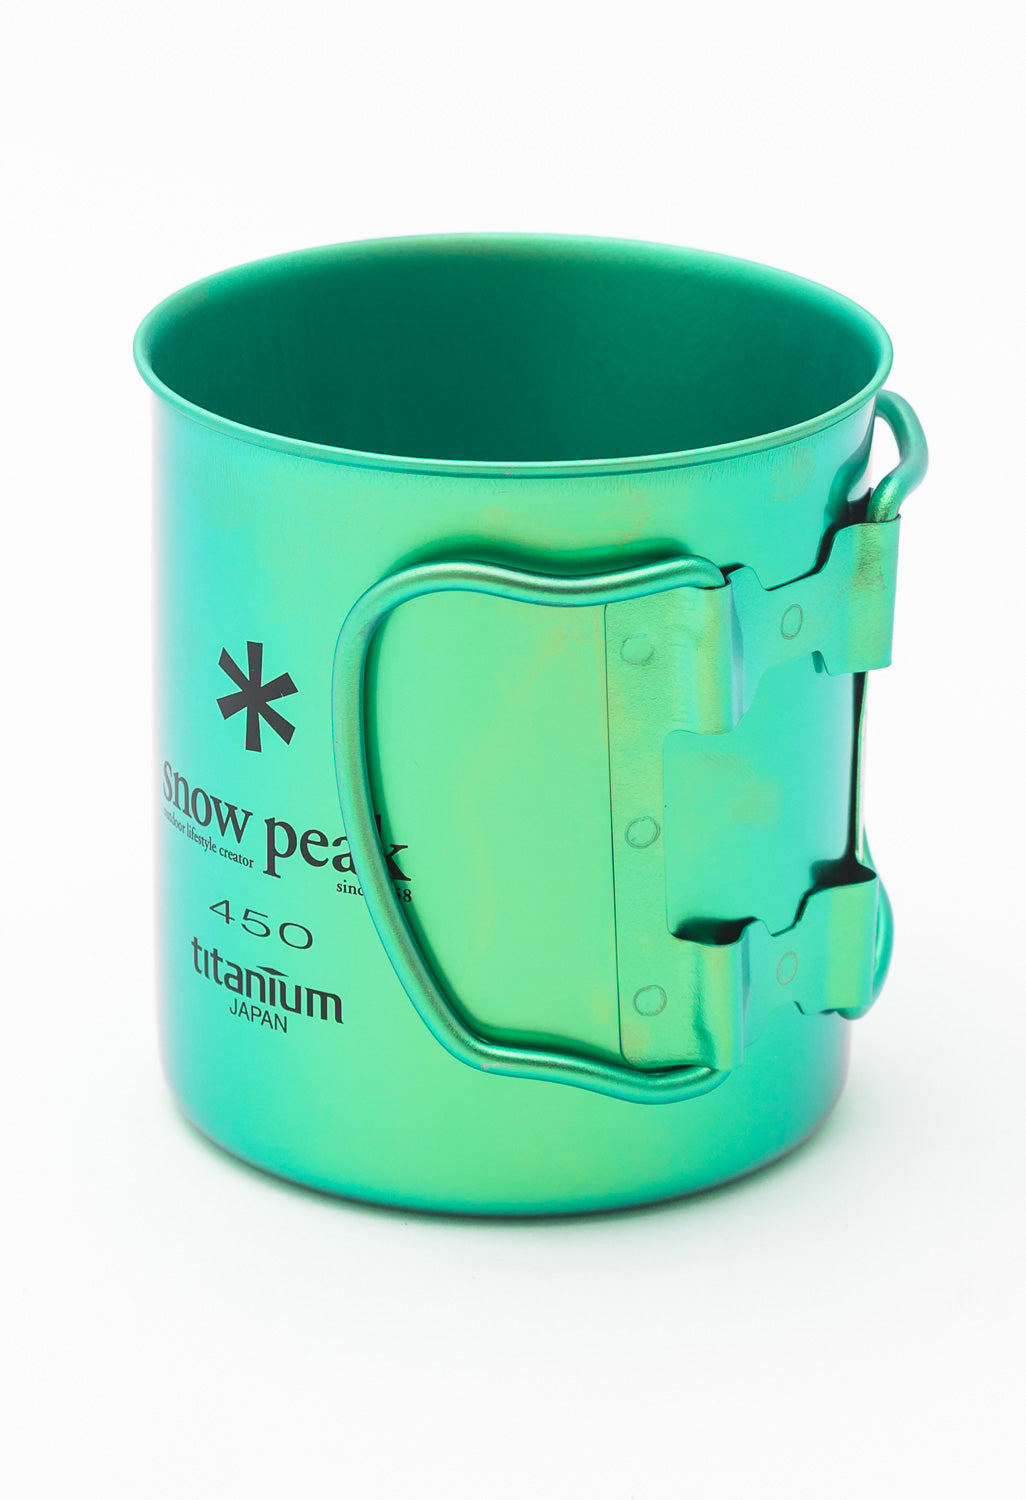 Snow Peak Titanium Colour Single Wall Cup 450ml - Green